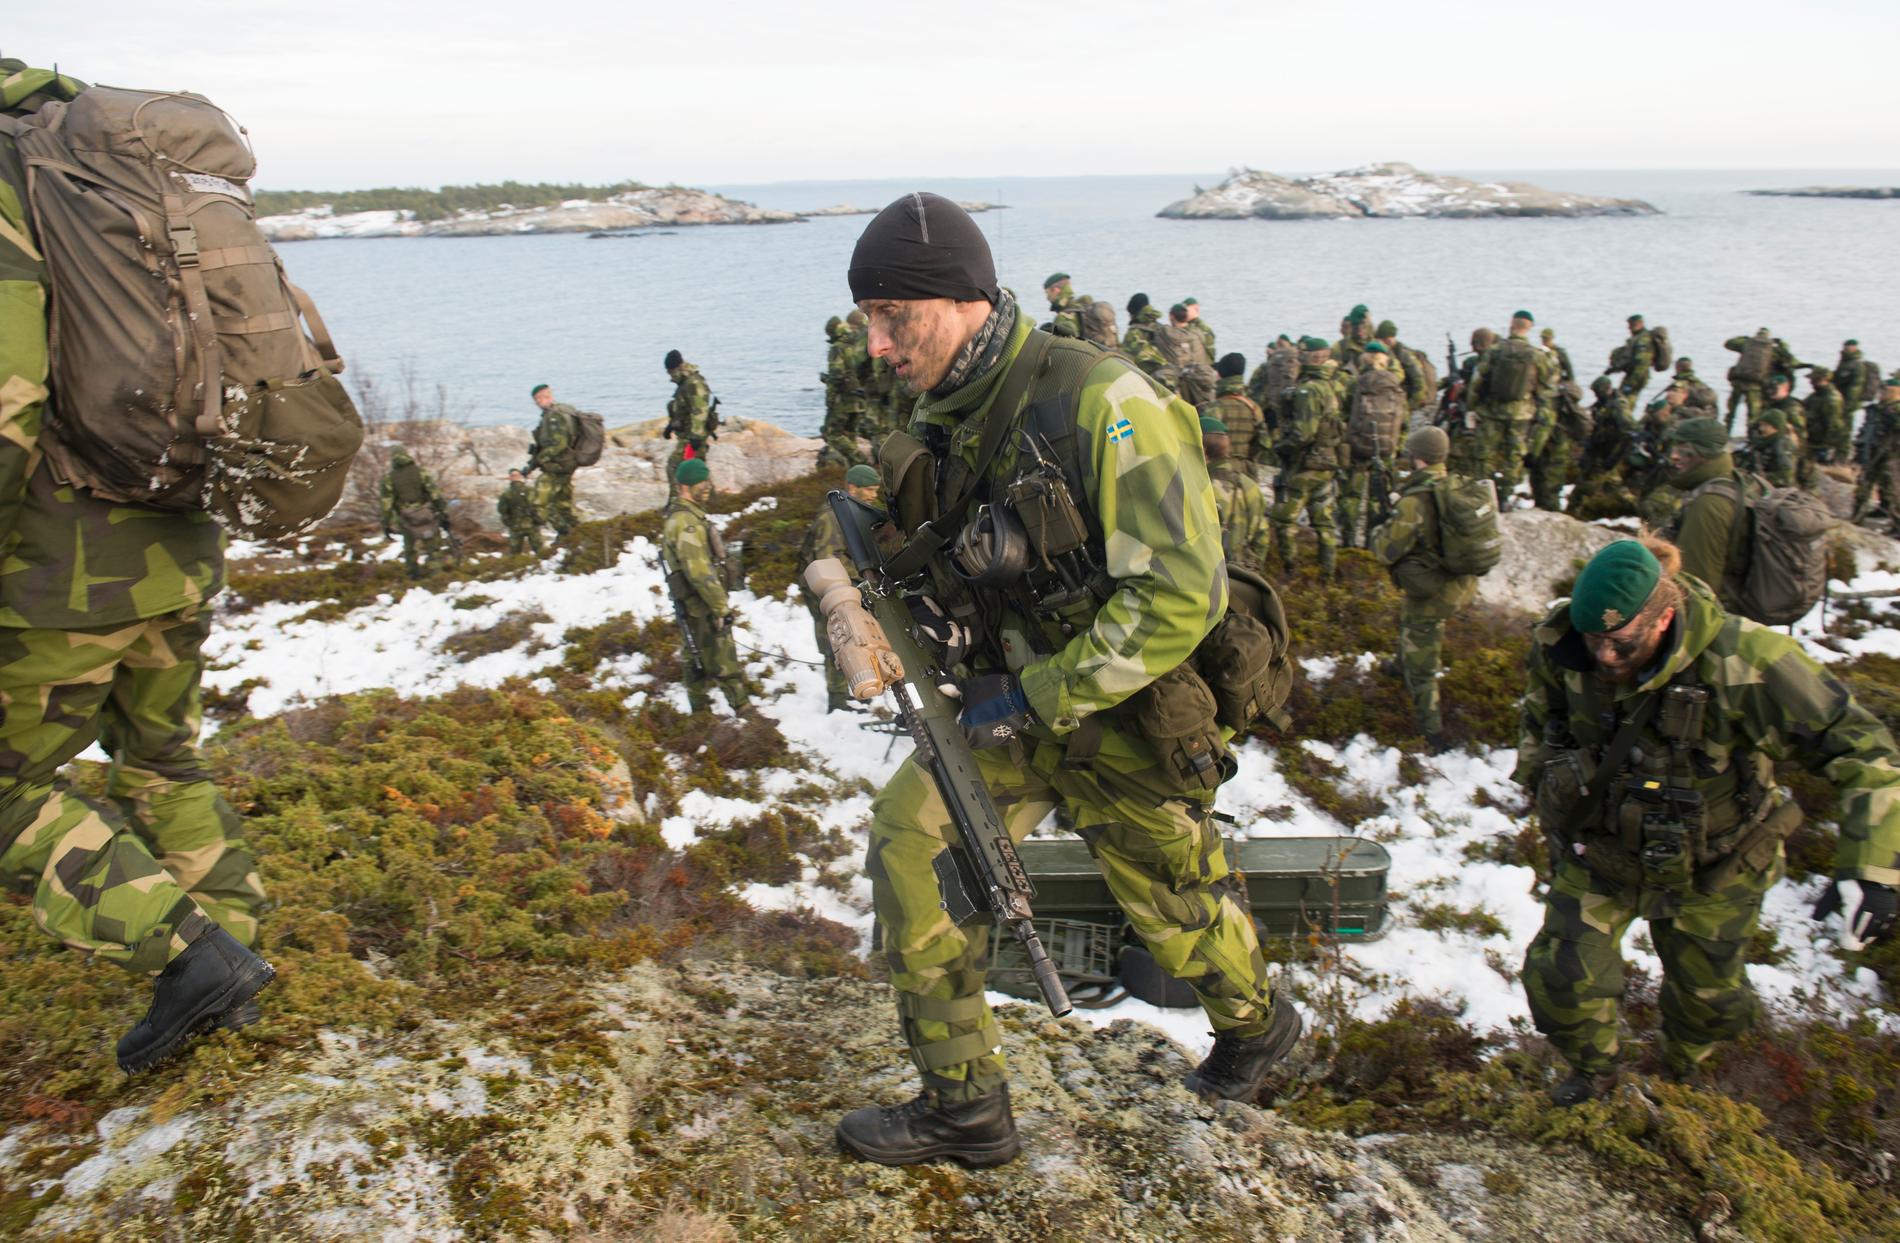 Amfibieskyttekompaniet i Stockholms skärgård under en tio dagar långa marina övningen Swenex, december 2016. Över 1700 soldater och sjömän ur marinens olika förband deltog i övningen.